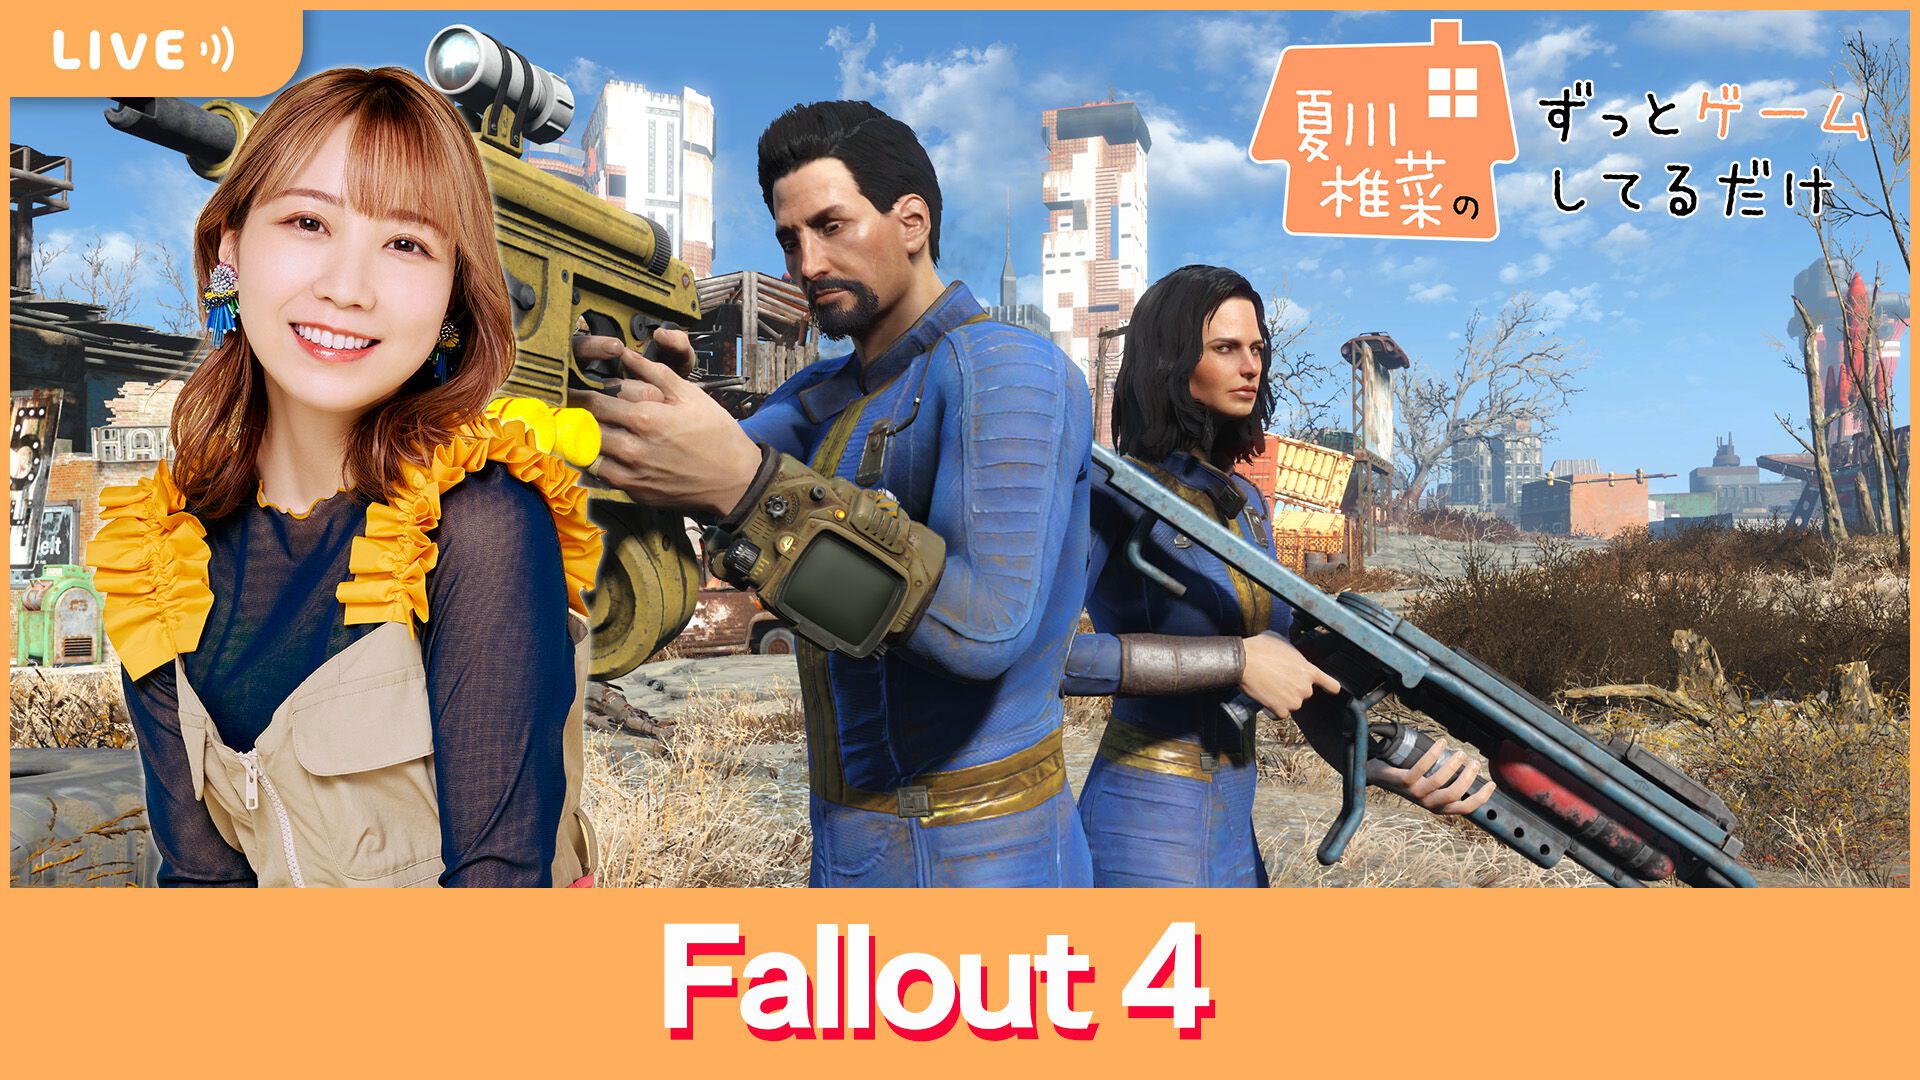 【6/14配信】声優・夏川椎菜が『Fallout 4』をプレイ。実写ドラマにドハマリしたFallout女子が世界観の魅力を再発見【#夏川ずっとゲ】